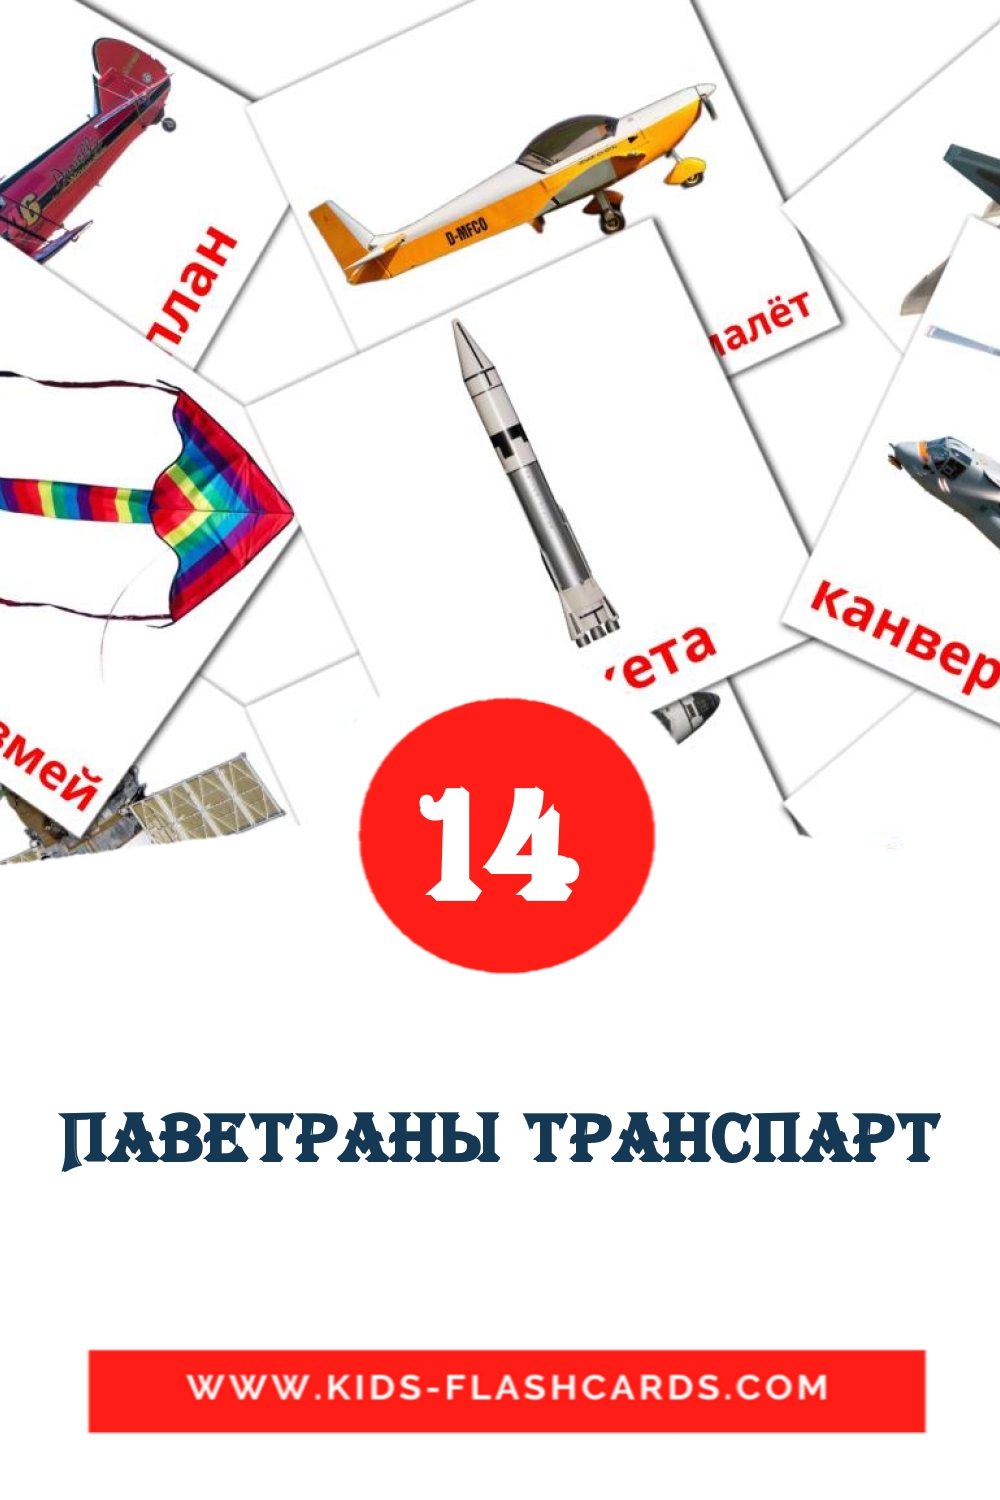 Паветраны транспарт на беларуском для Детского Сада (14 карточек)